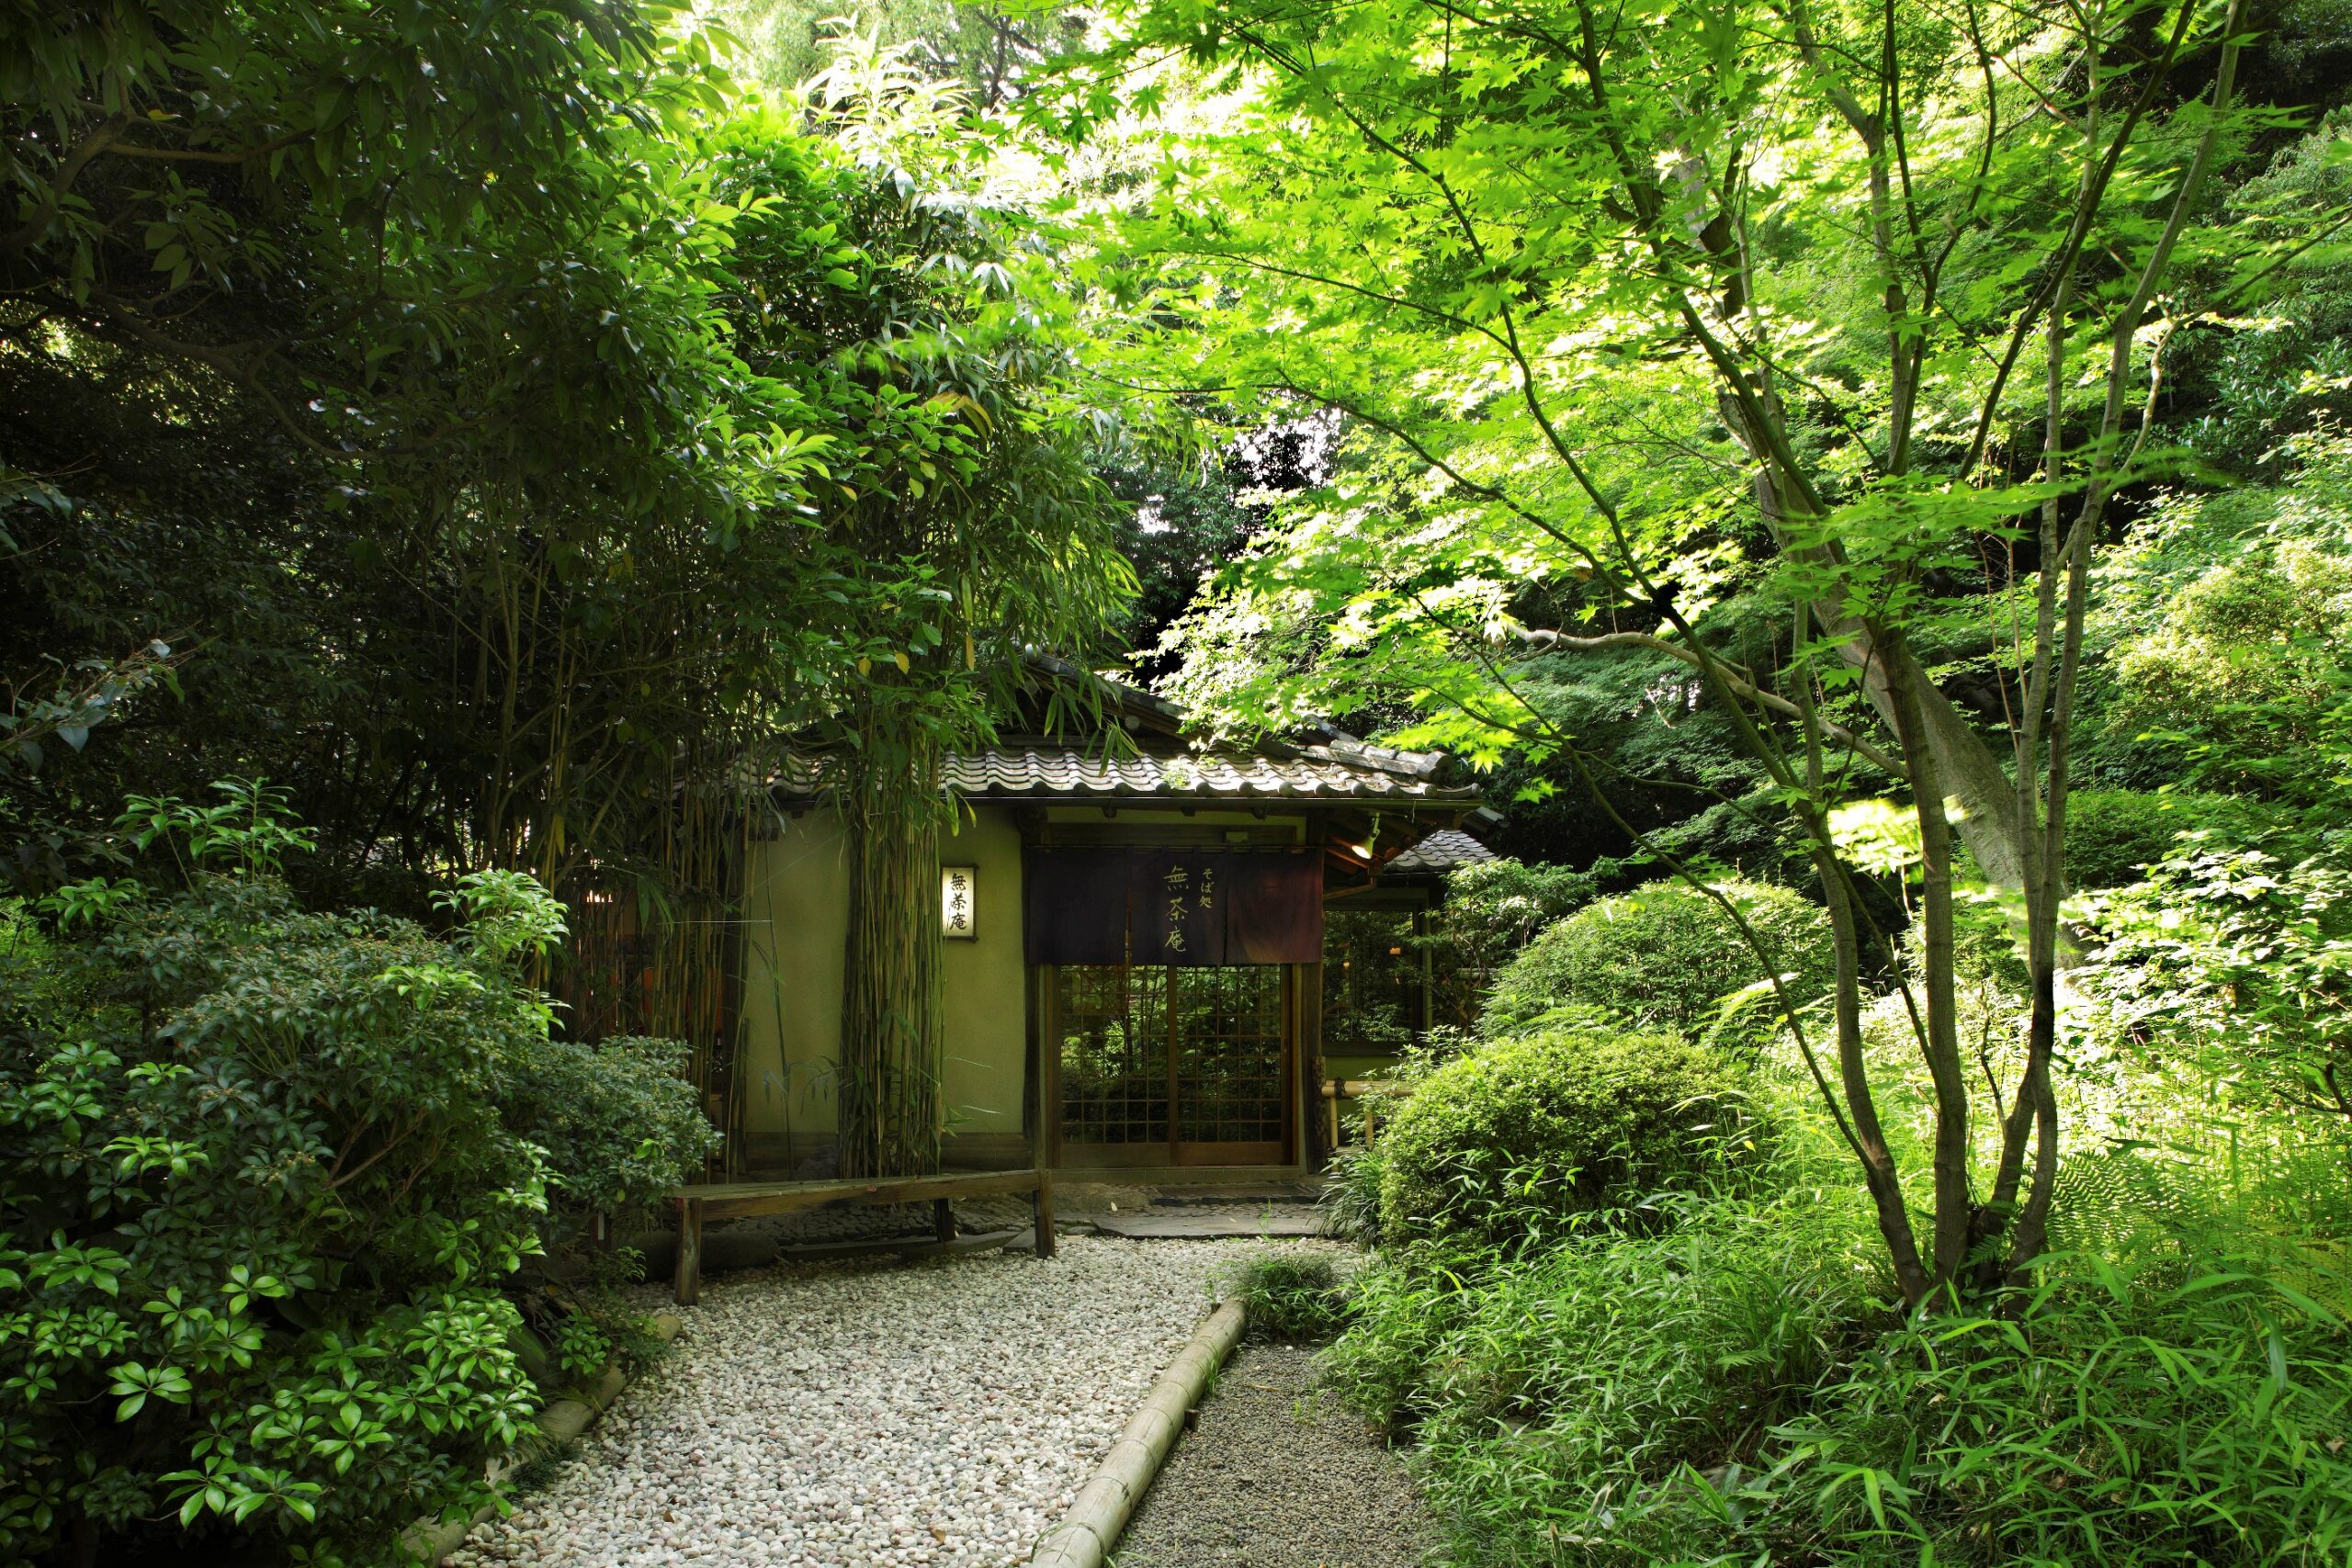 Hotel Chinzanso Tokyo Garden